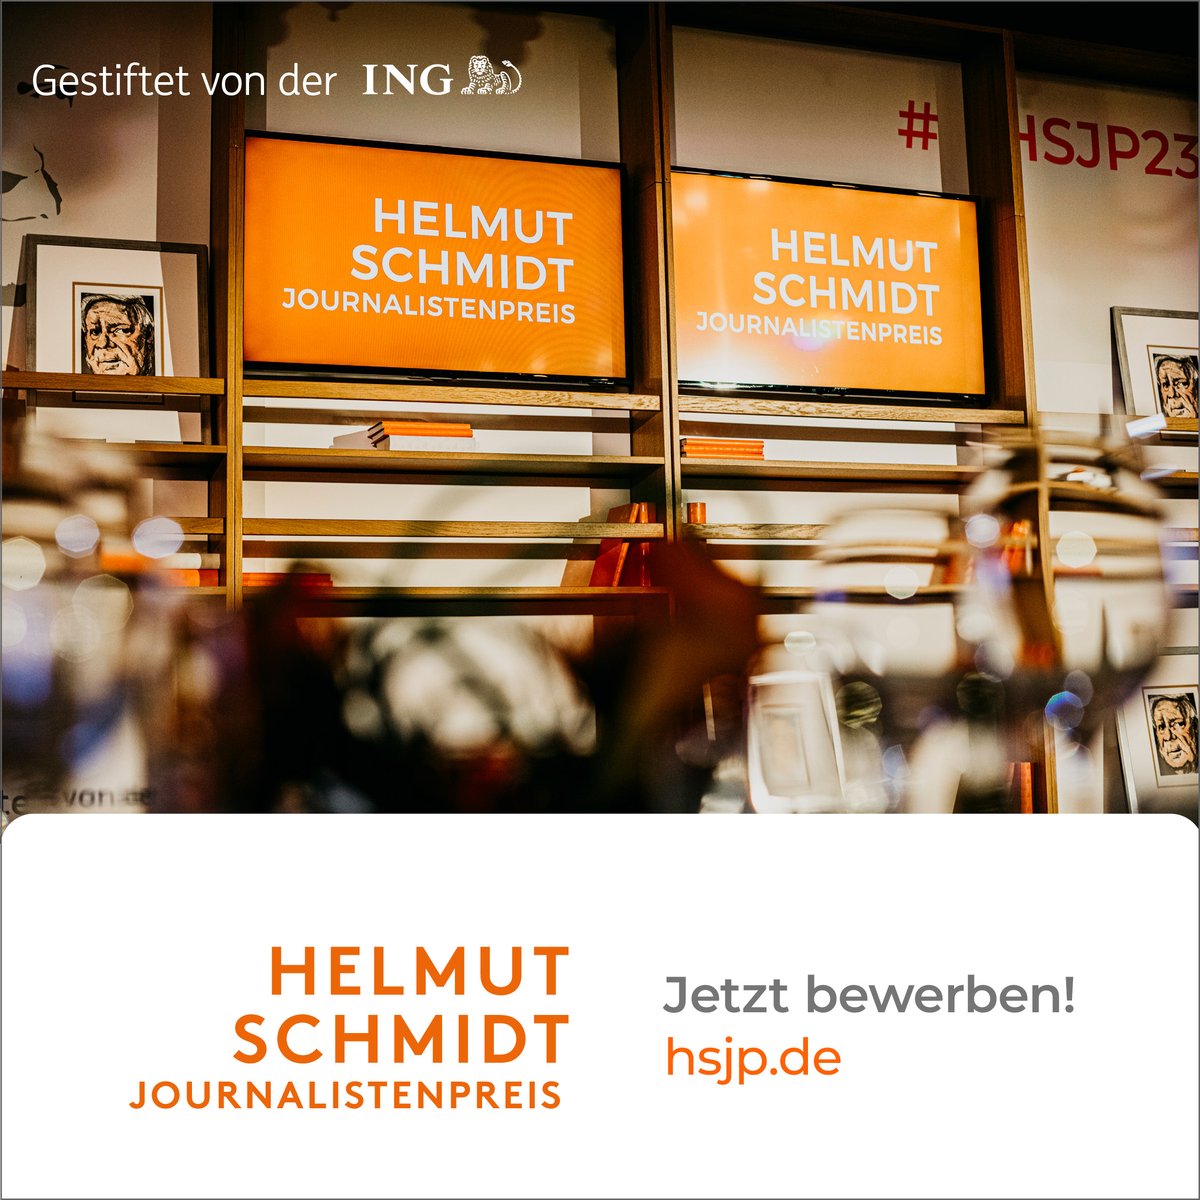 Anzeige: Jetzt bis 30. Juni auf hsjp.de für den Helmut Schmidt Journalistenpreis bewerben! Top-Leistungen im Wirtschafts- und Finanzjournalismus werden mit insgesamt 30.000 € prämiert. #HSJP24